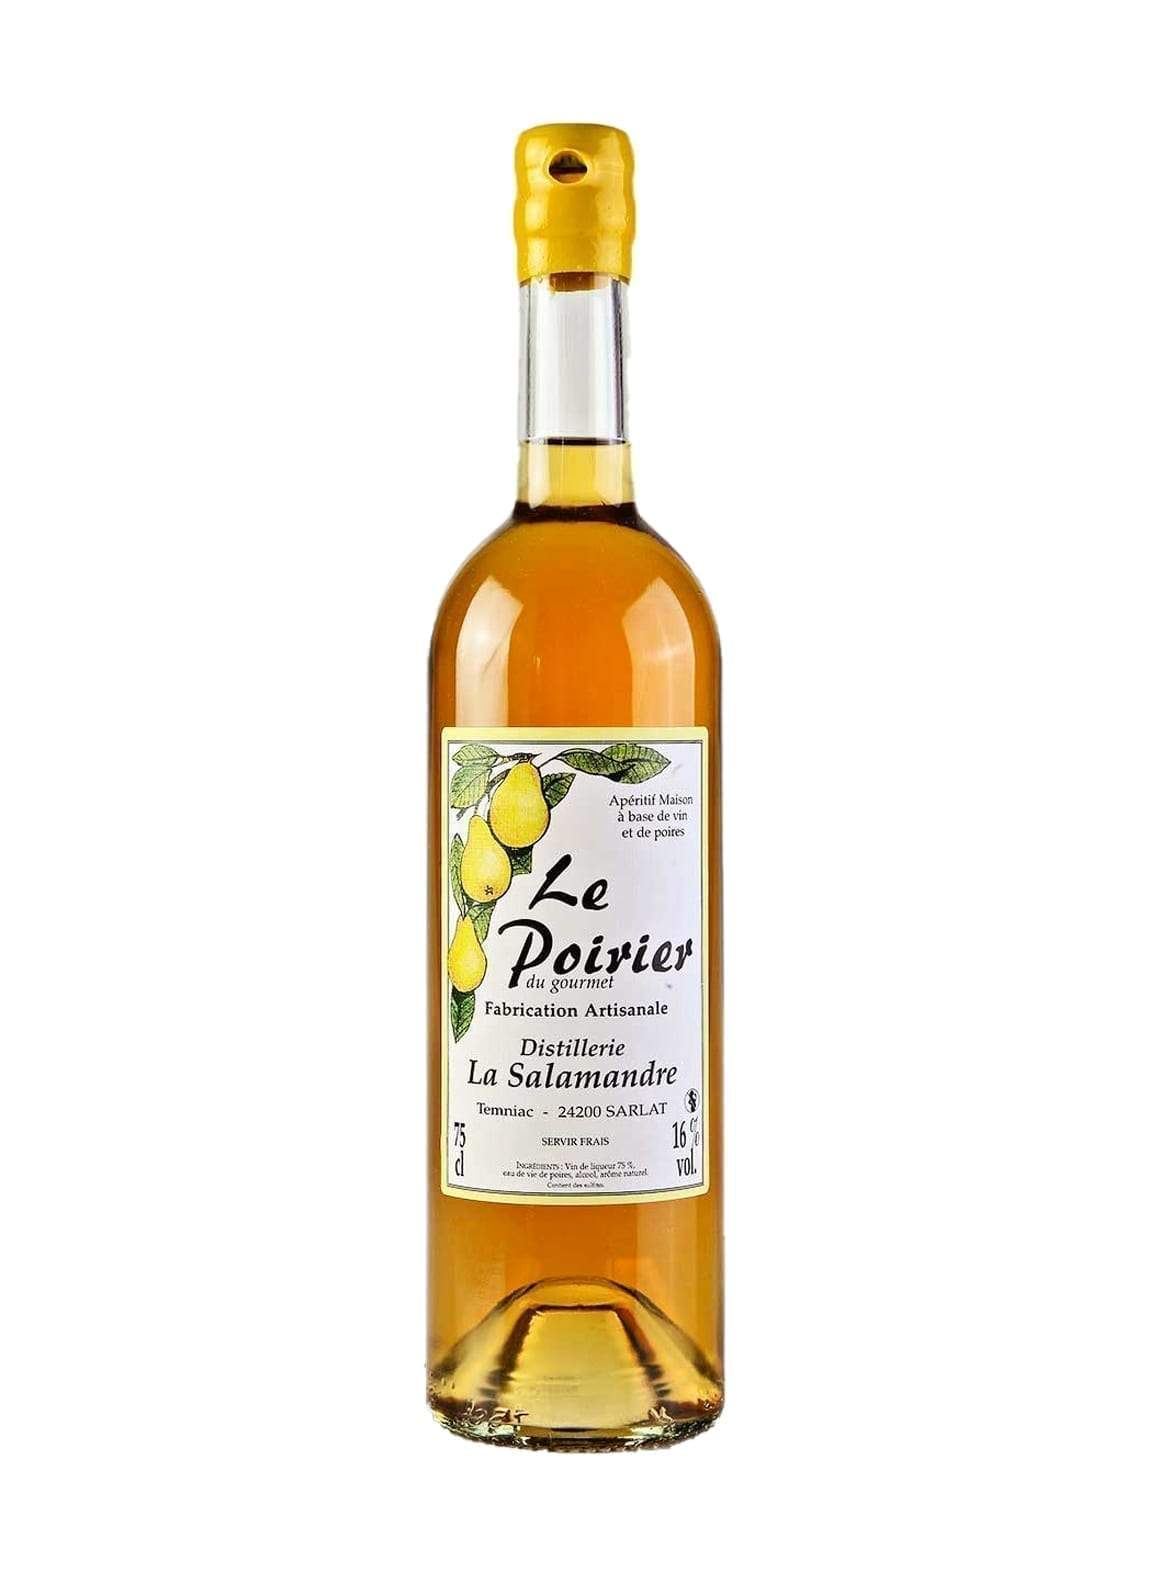 La Salamandre Aperitif Le Poirier 16% 750ml | Alcoholic Beverages | Shop online at Spirits of France